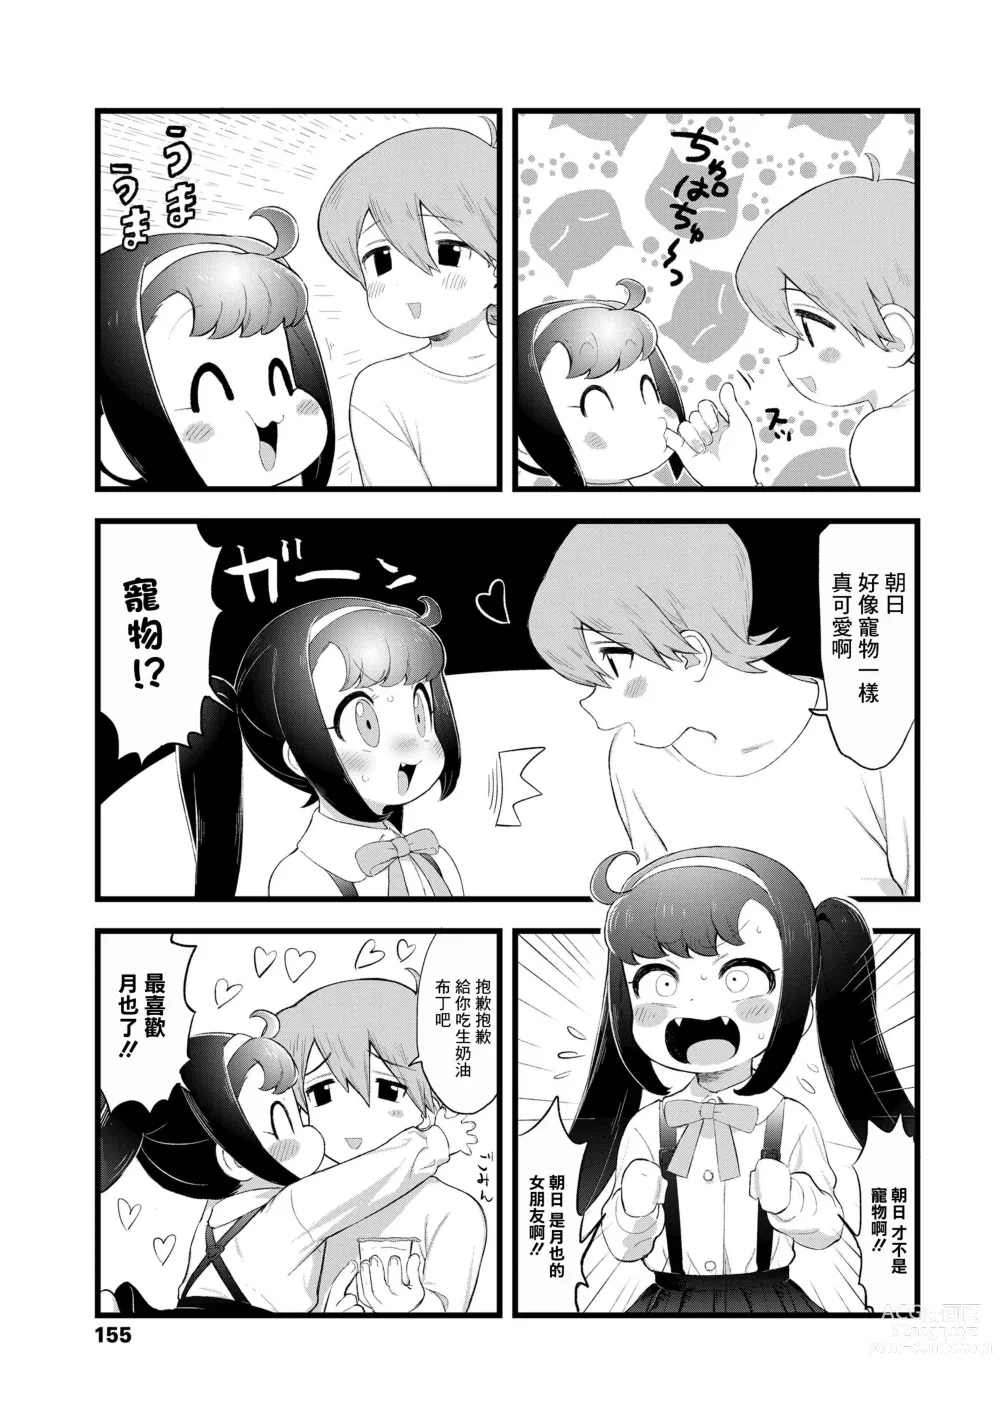 Page 3 of manga Asahi San